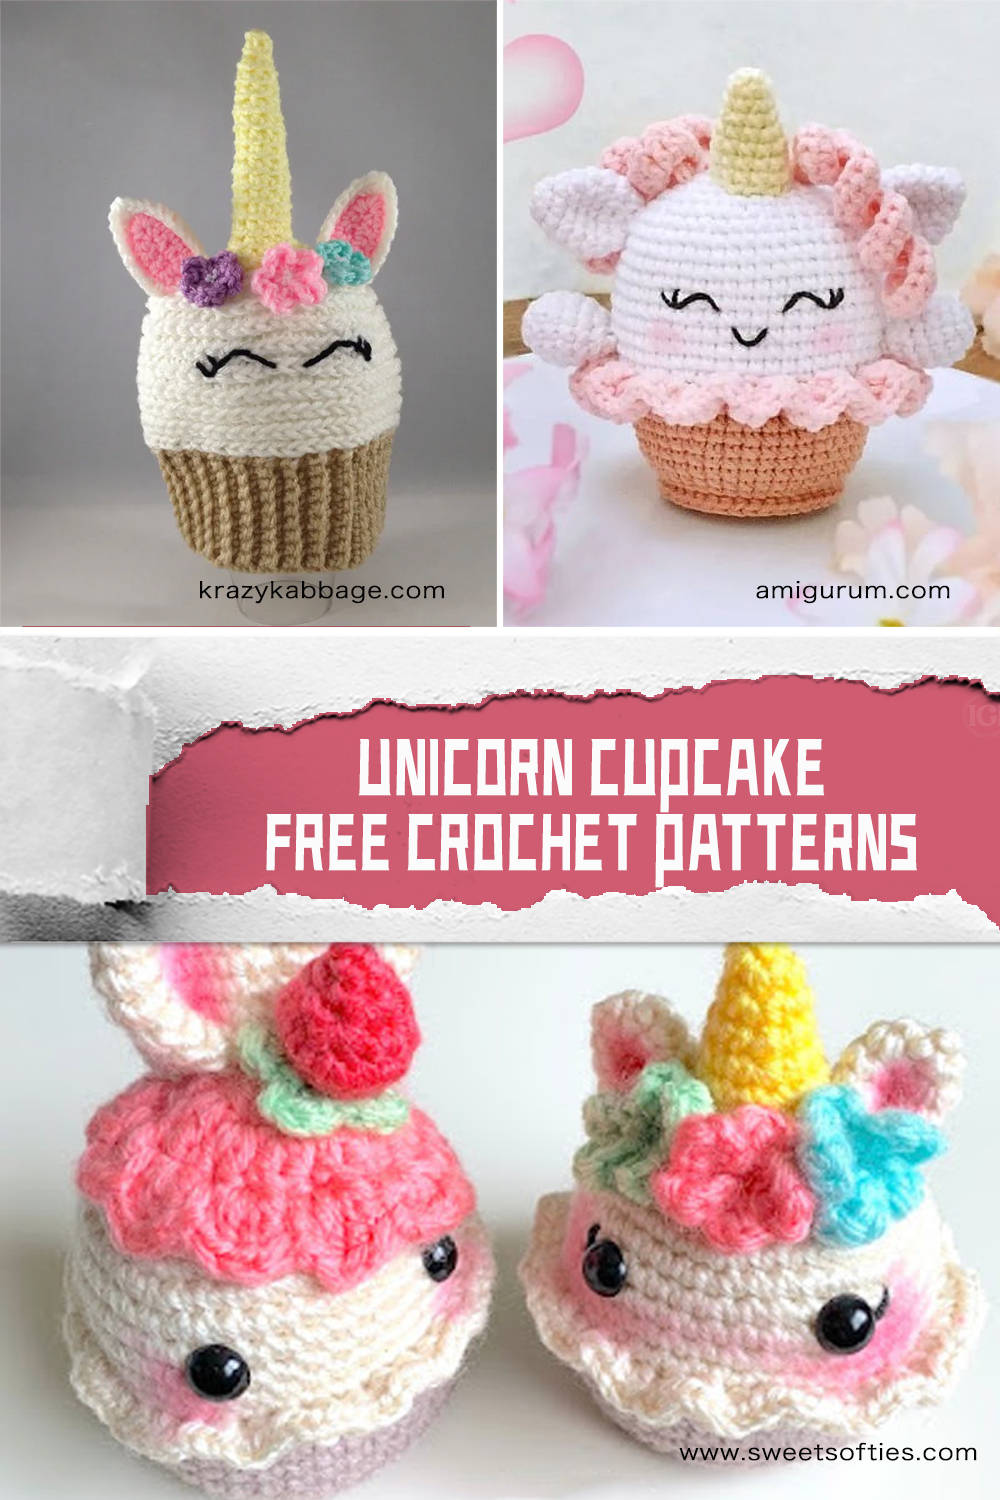  FREE Unicorn Cupcake Crochet Patterns 